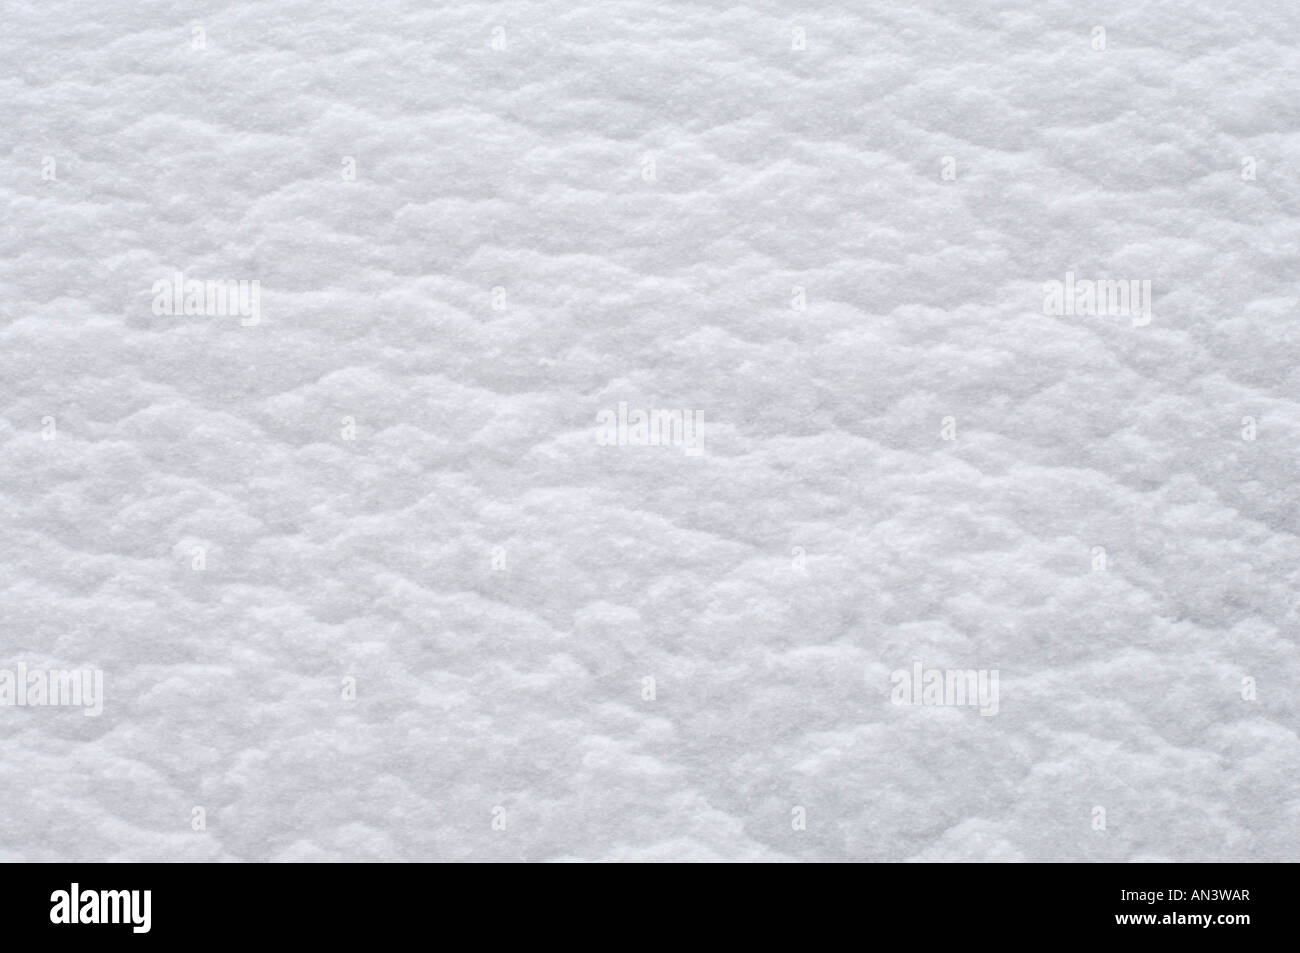 White snow texture Stock Photo